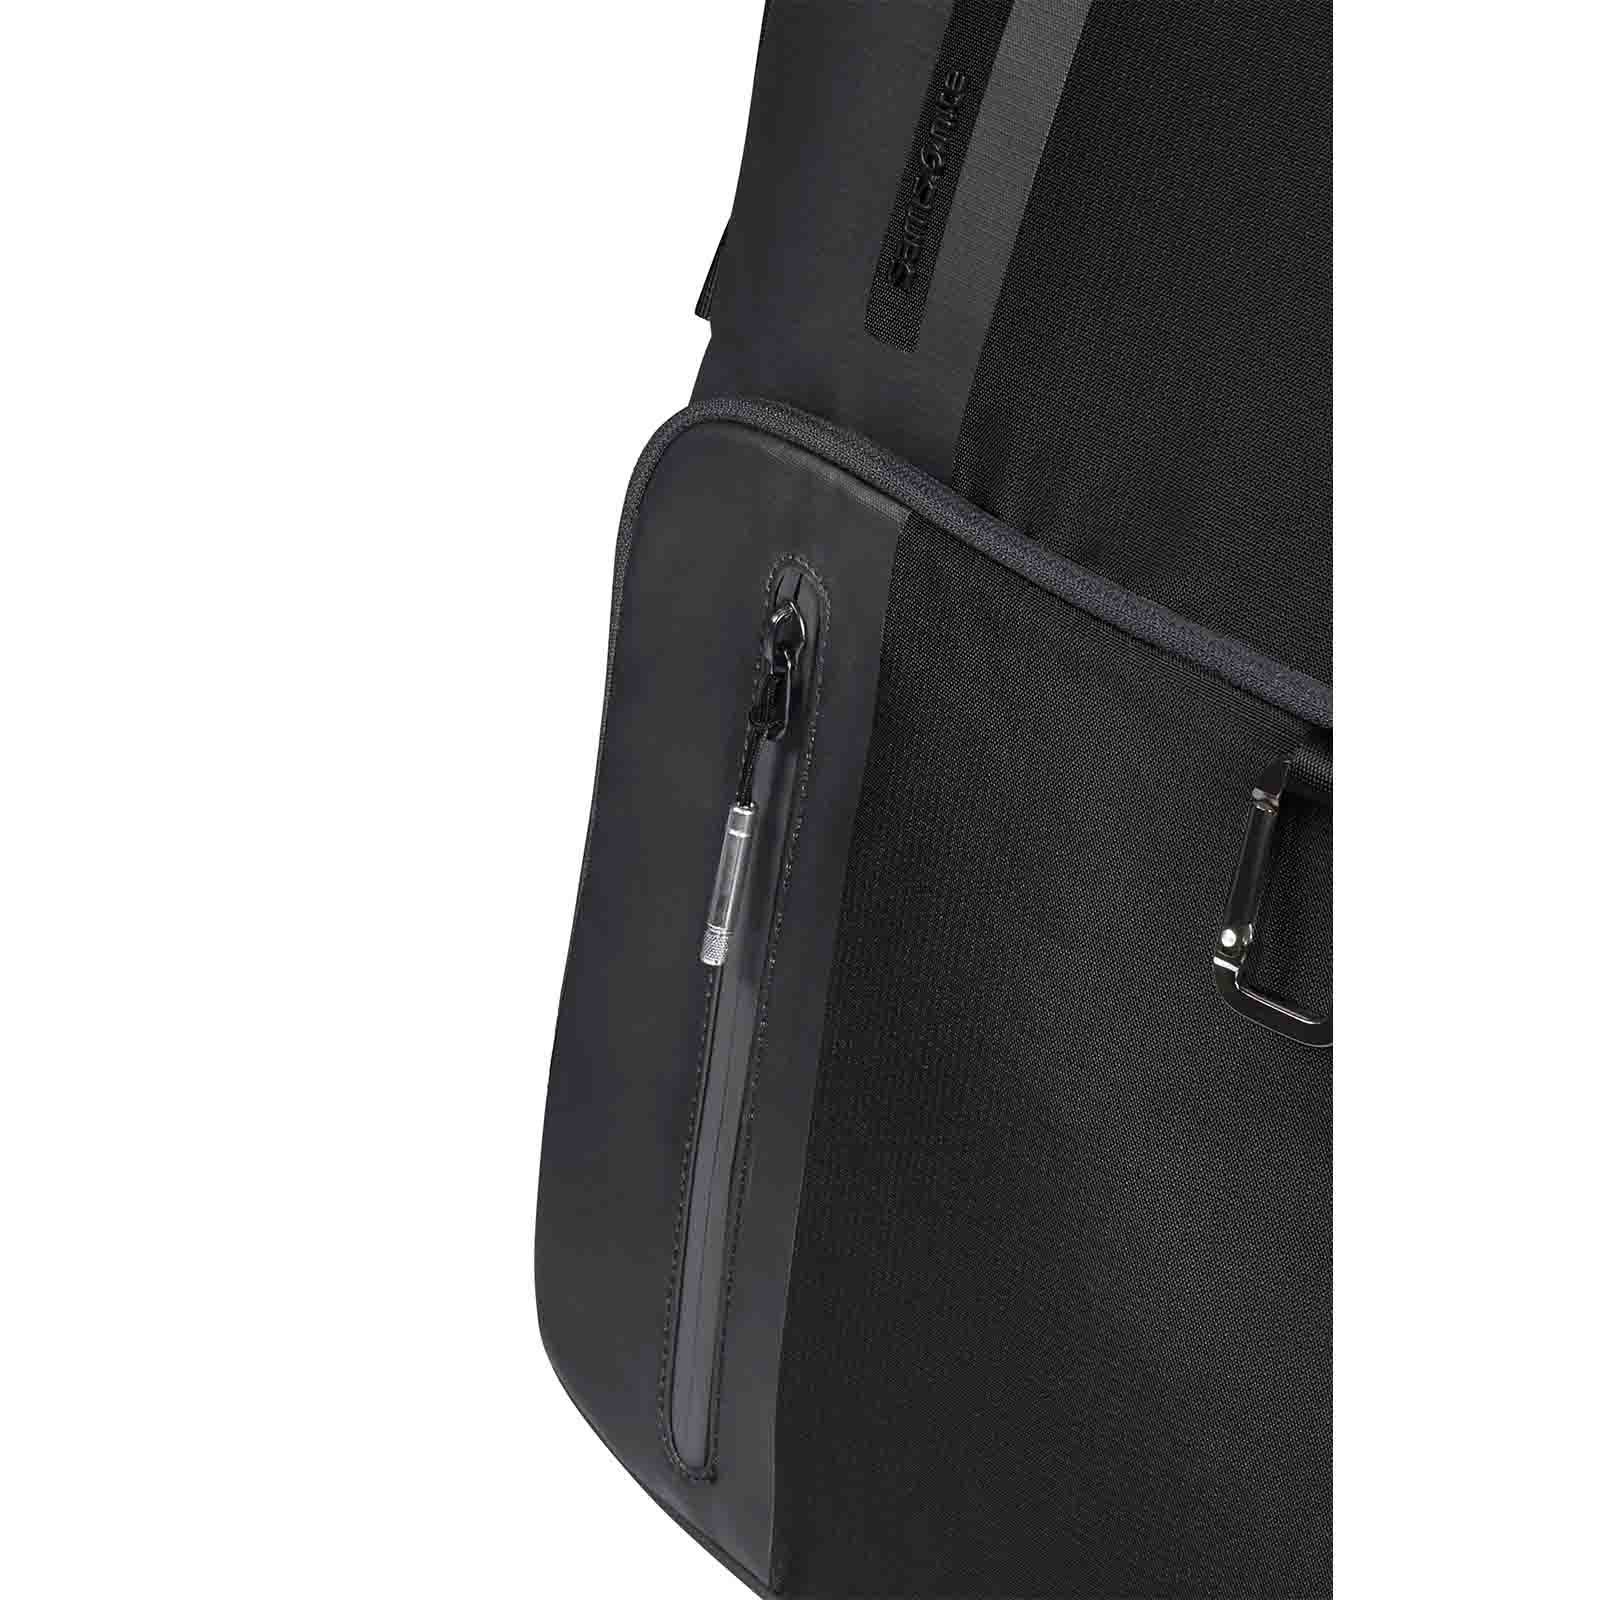 Samsonite-Biz2go-15-Inch-Laptop-Backpack-Black-Zip